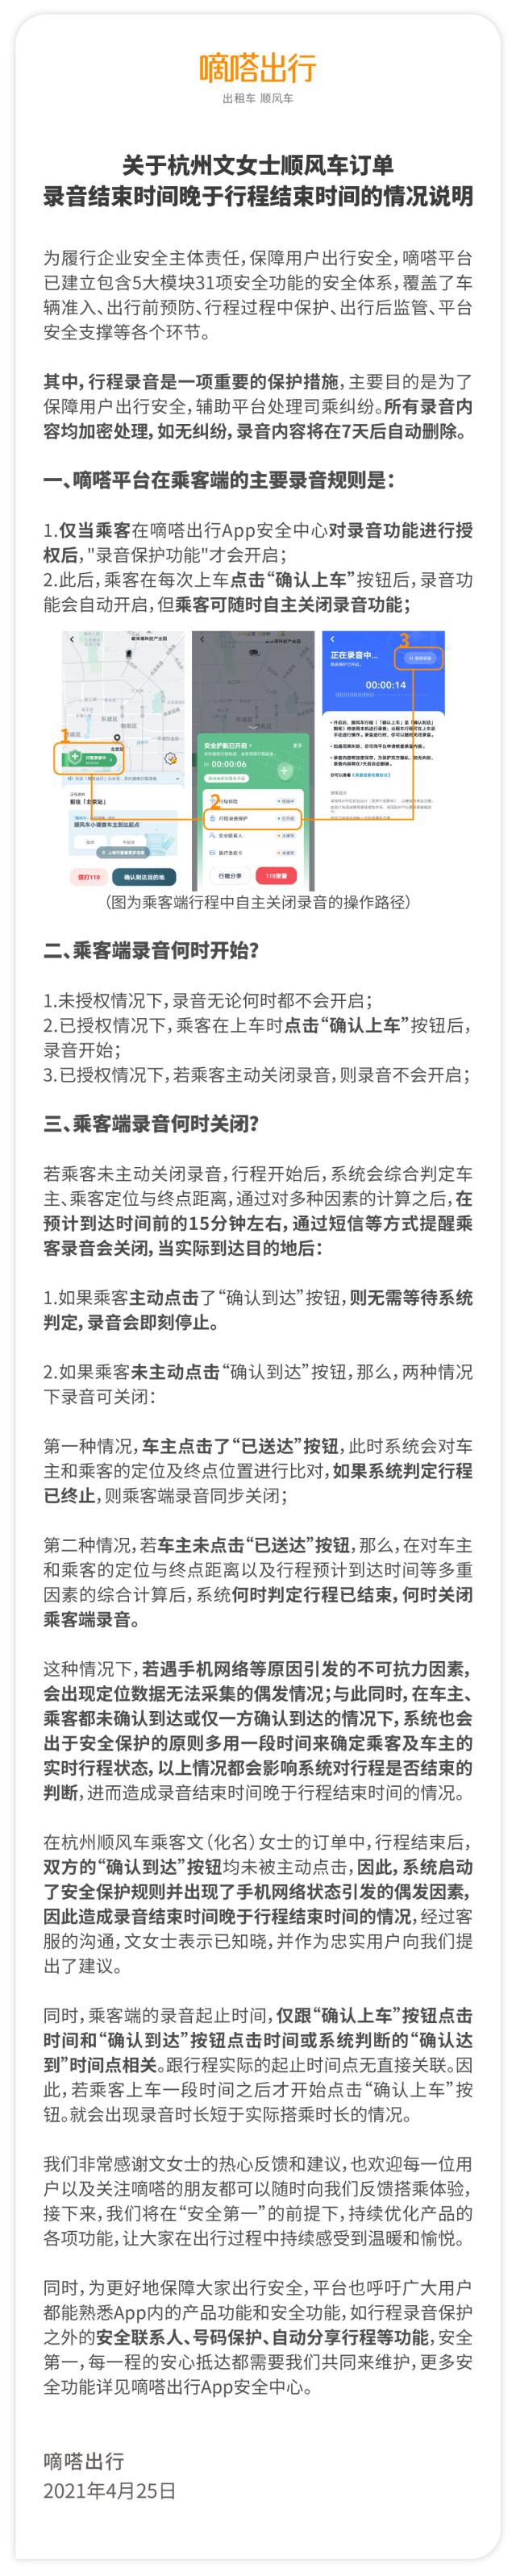 杭州順風車訂單錄音超時 嘀嗒出行回應平臺錄音機制